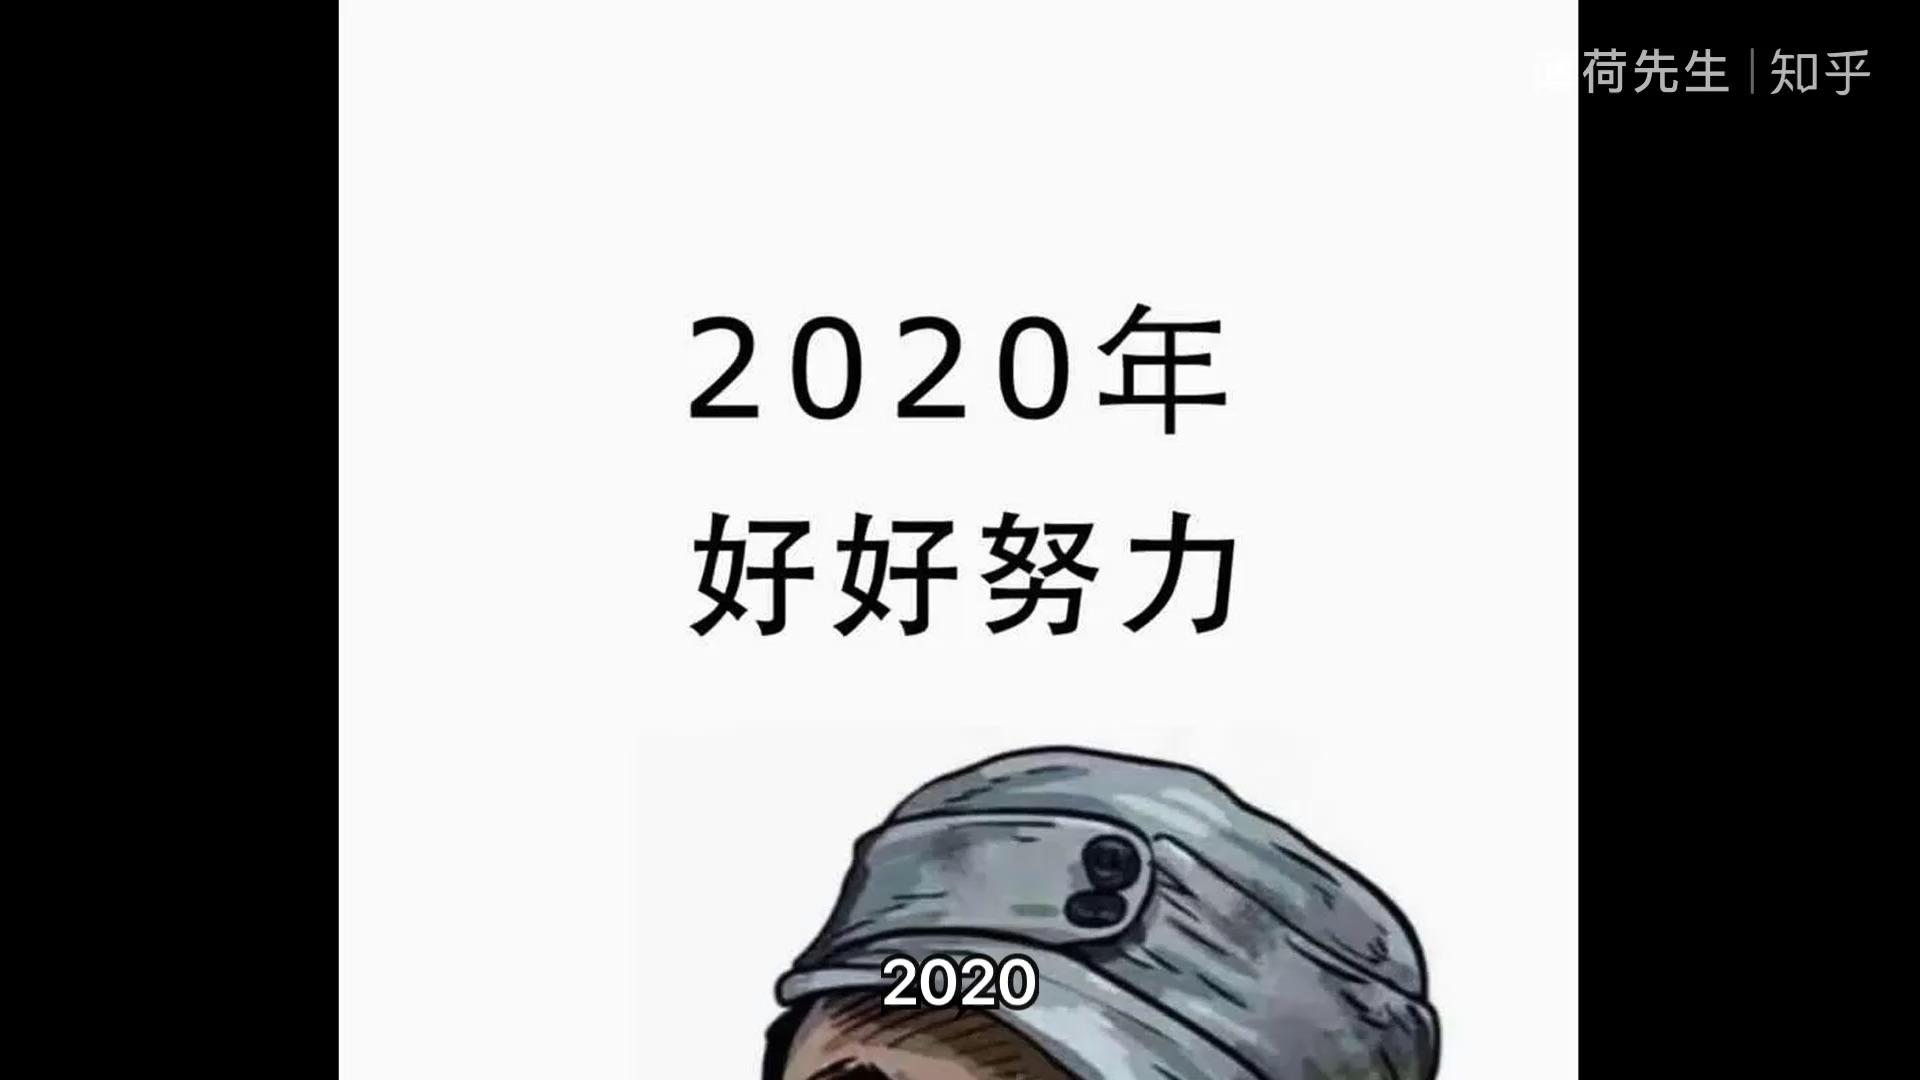 2021目标如何设定?2020如何总结?